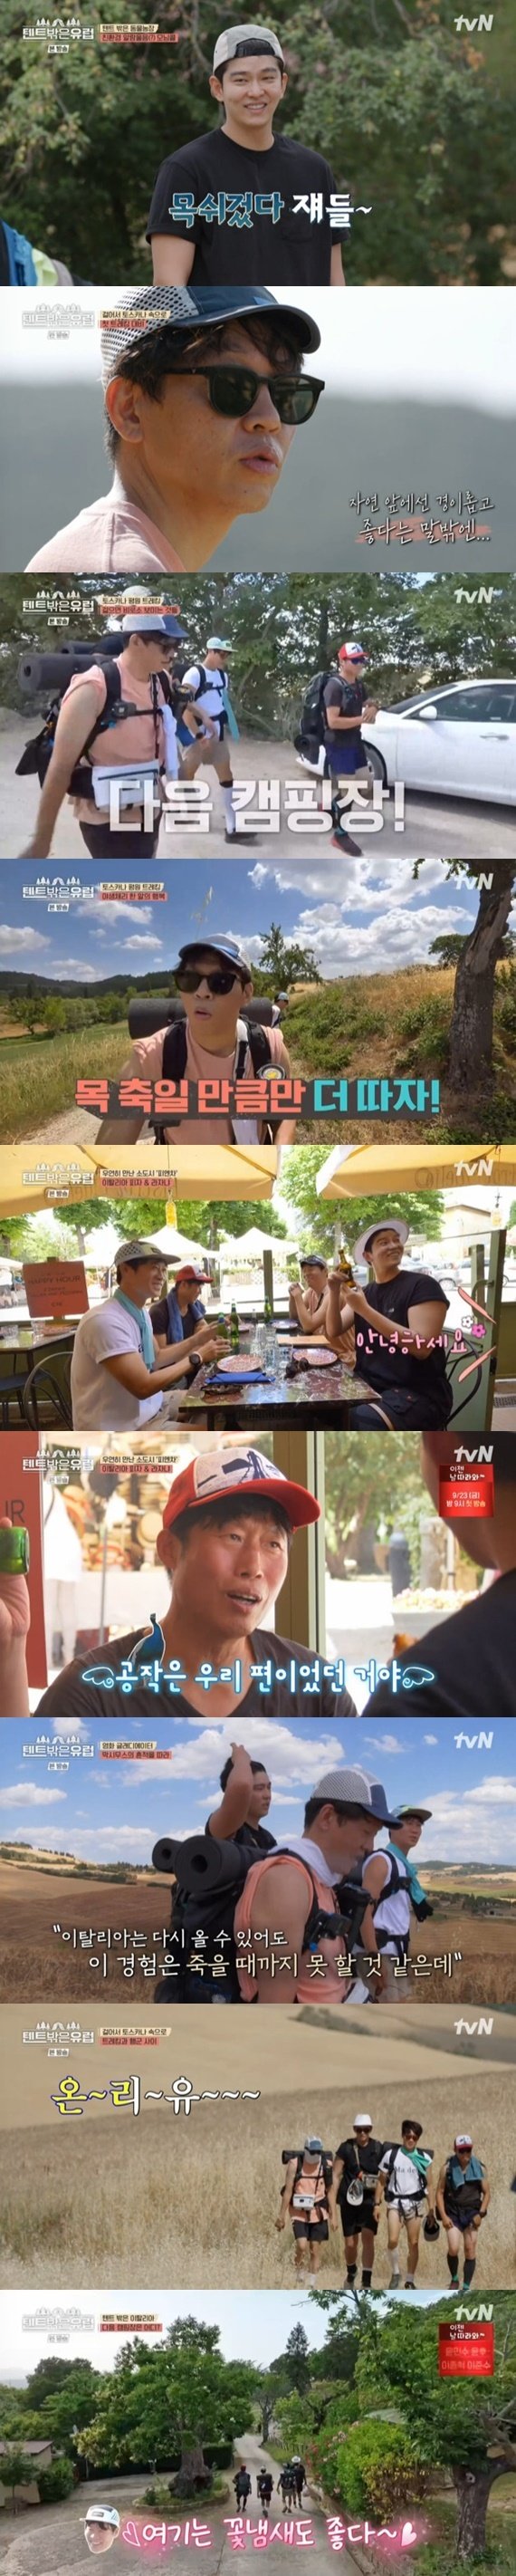 tvN ‘텐트 밖은 유럽’ 캡처